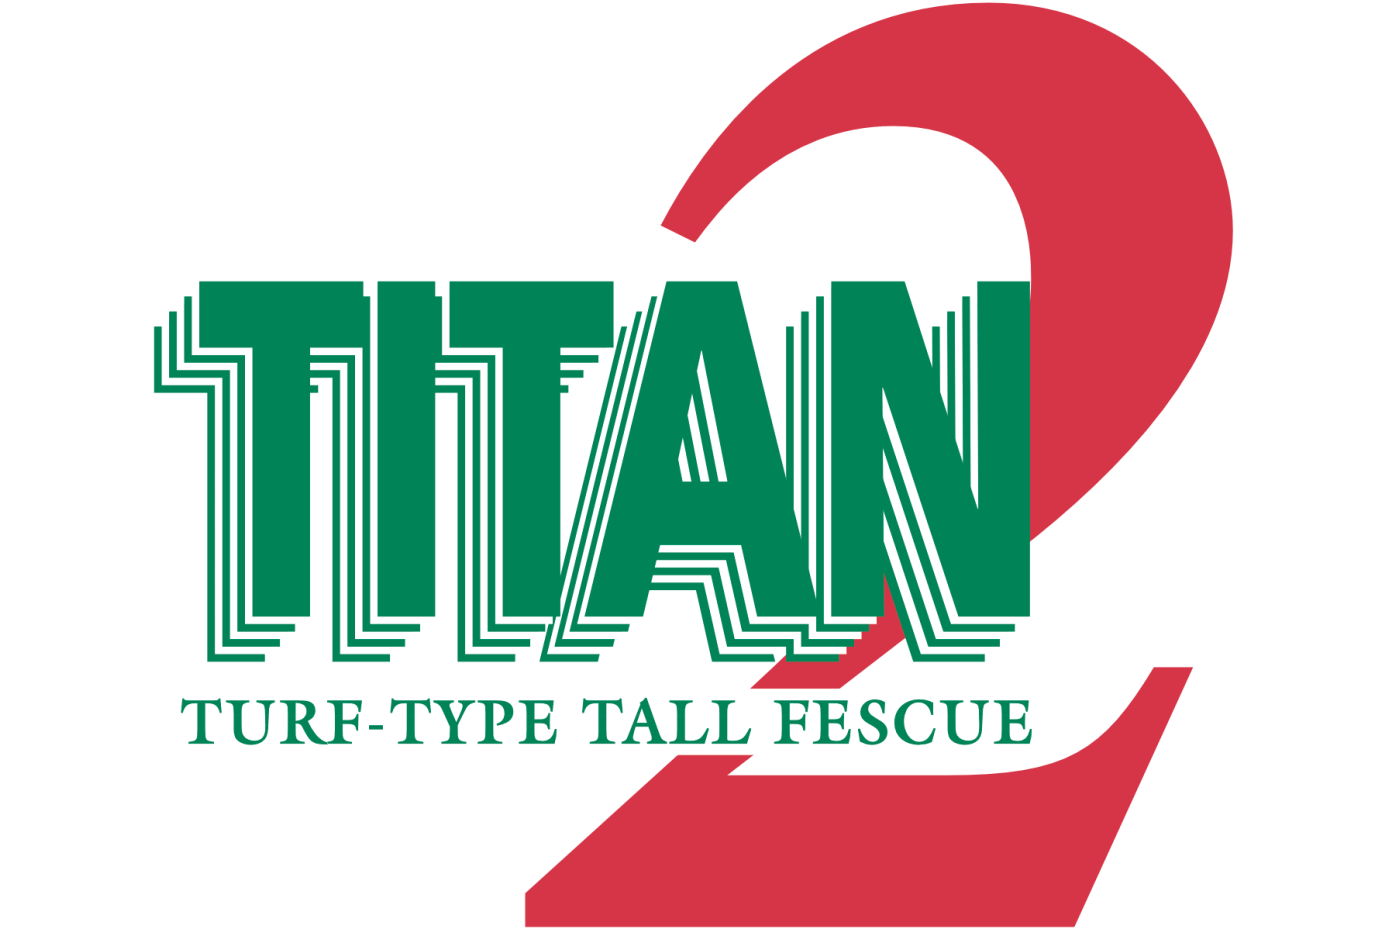 Titan2 turf-type tall fescue logo